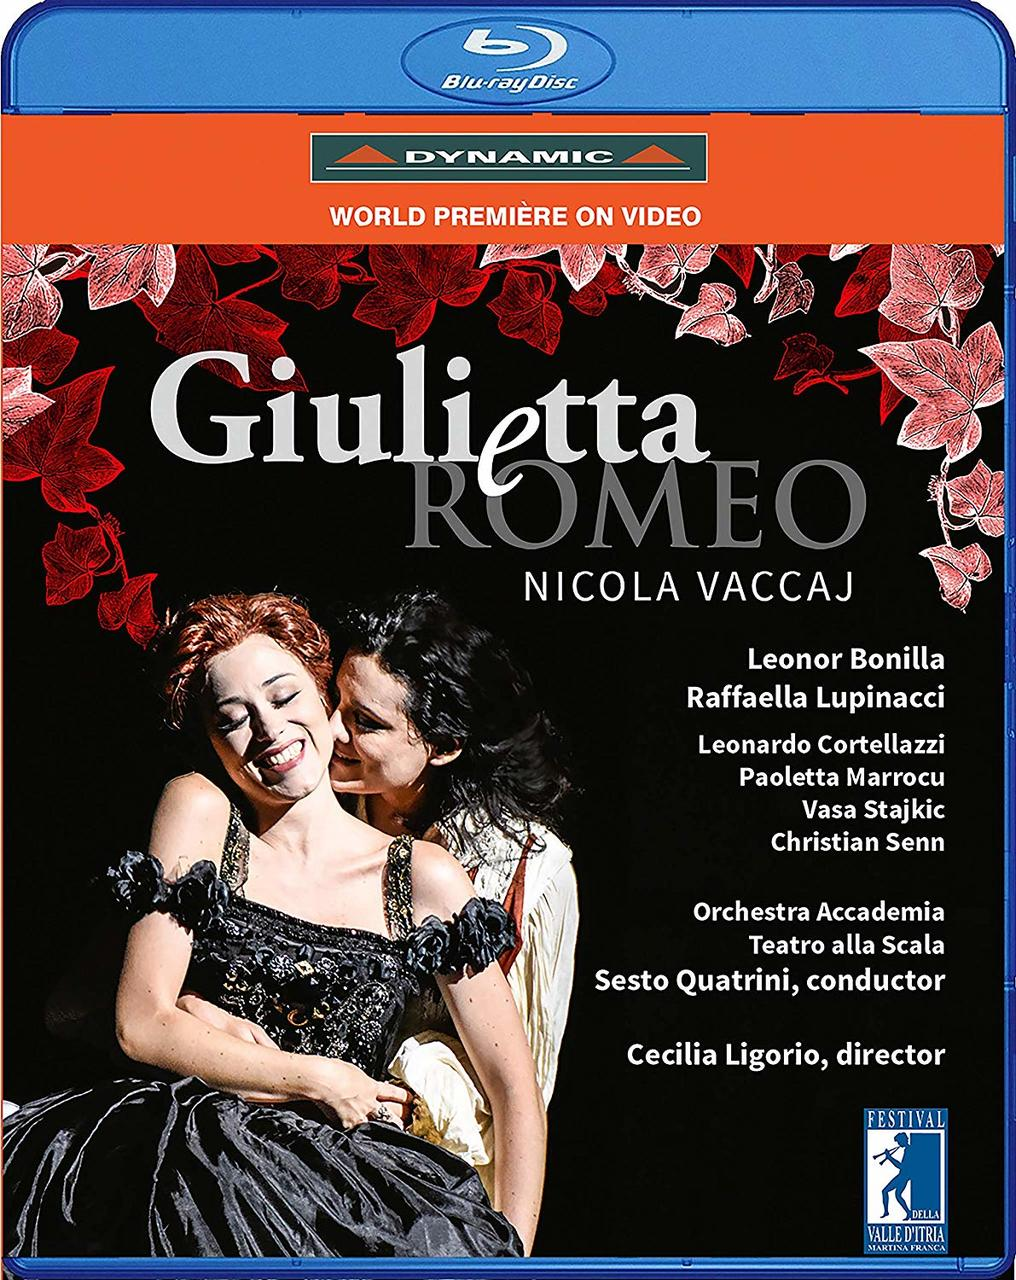 (Blu-ray) - Alla Scala, Bonilla - e Leonor Orchestra Romeo Teatro Lupinacci, Raffaella Accademia, Giulietta